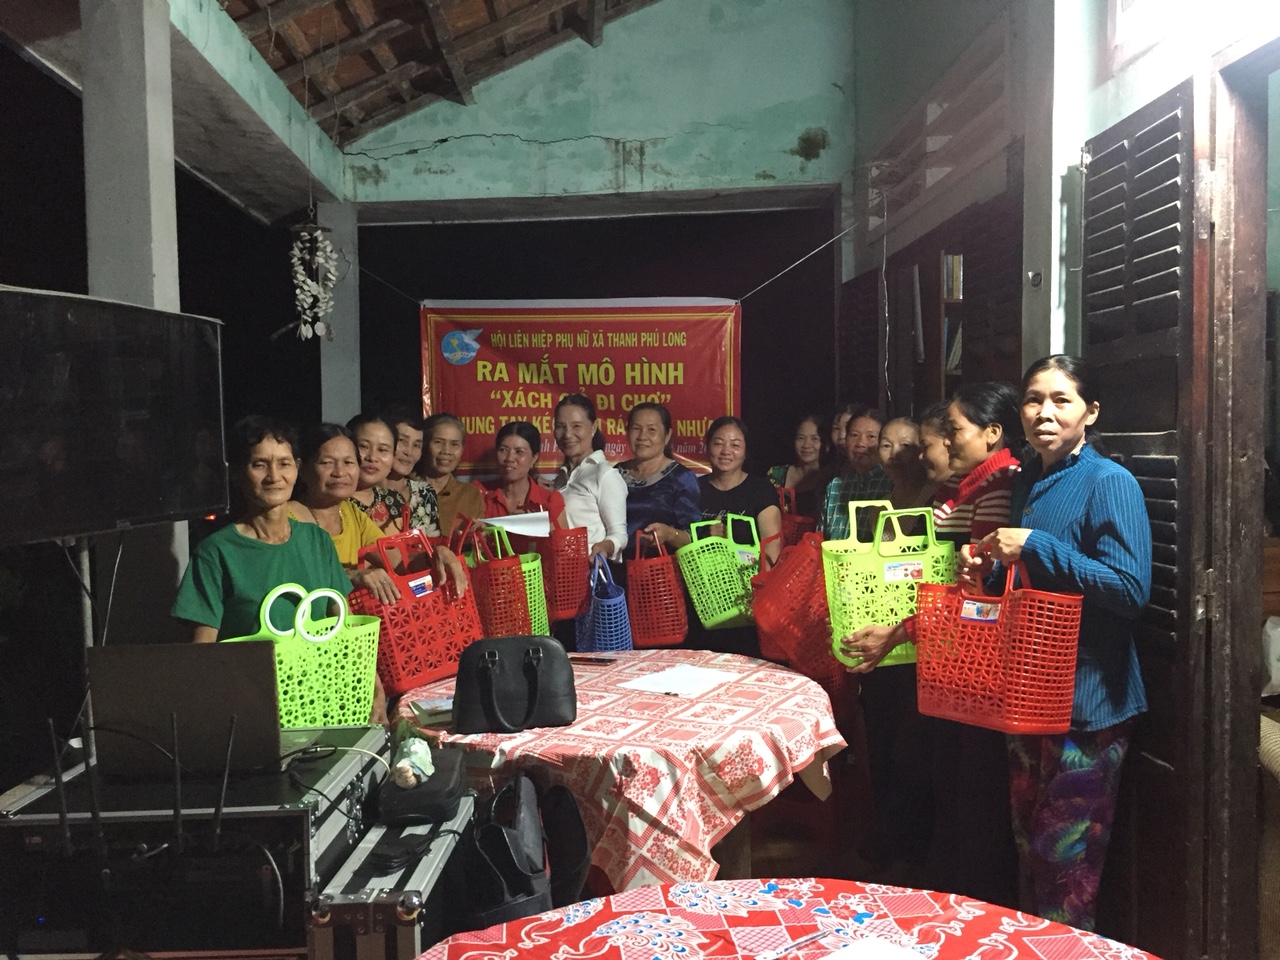 Hội Liên hiệp Phụ nữ Việt Nam xã Thanh Phú Long ra mắt mô hình Xách giỏ đi chợ và Chi hội 5 không - 3 sạch, góp phần bảo vệ môi trường (Ảnh: Hội cung cấp)